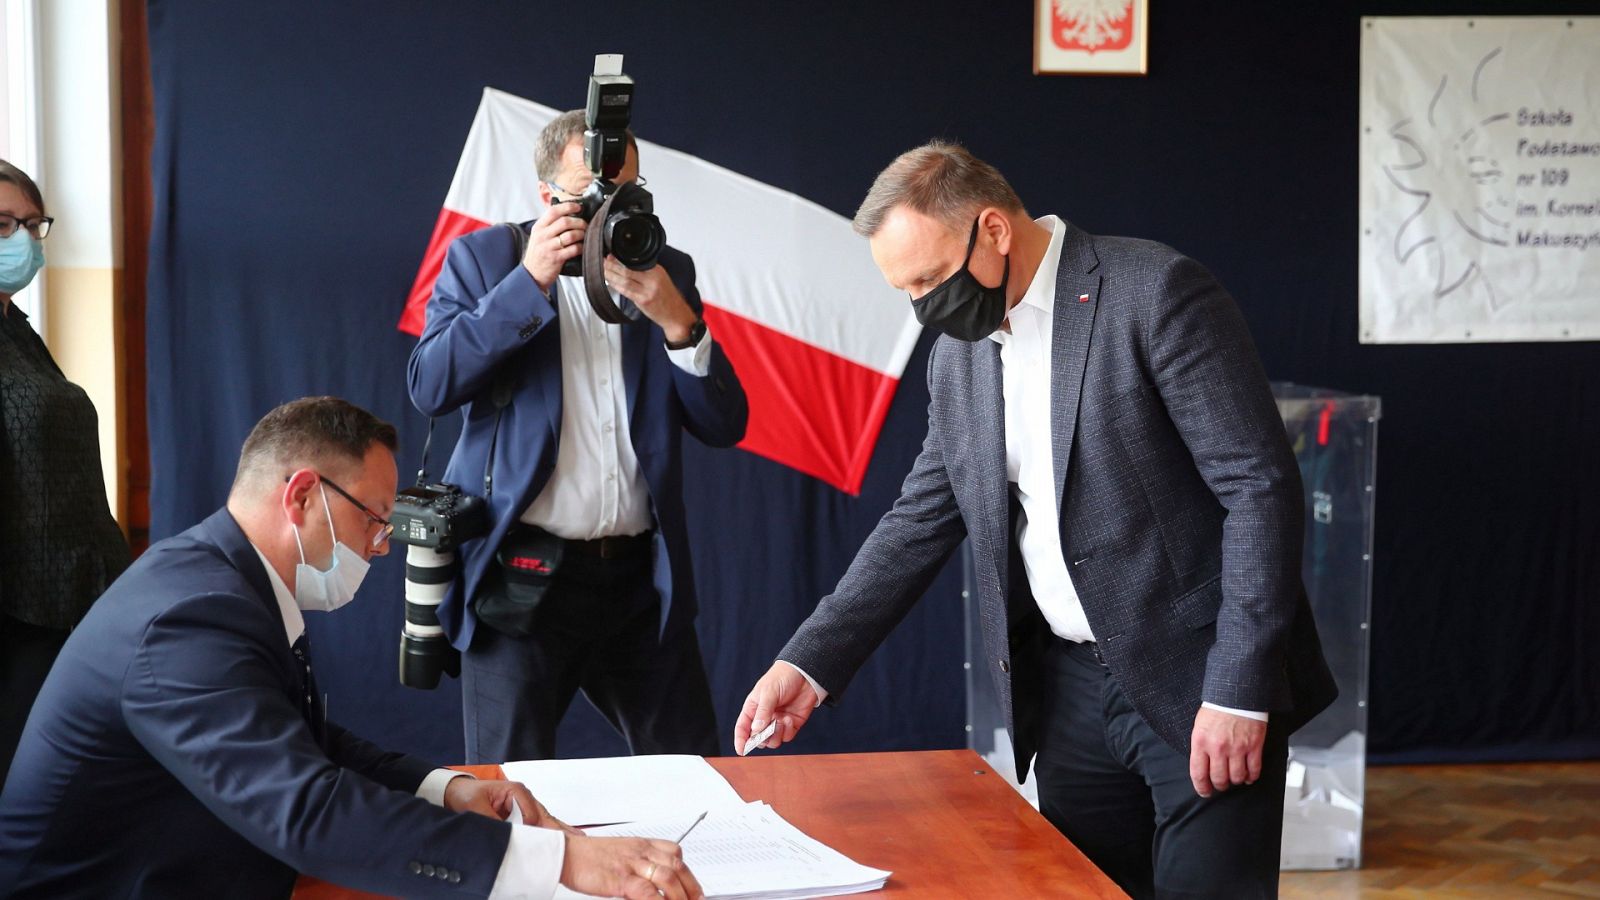 El momento en el que el ultraconservador Andrzej Duda depositaba su voto